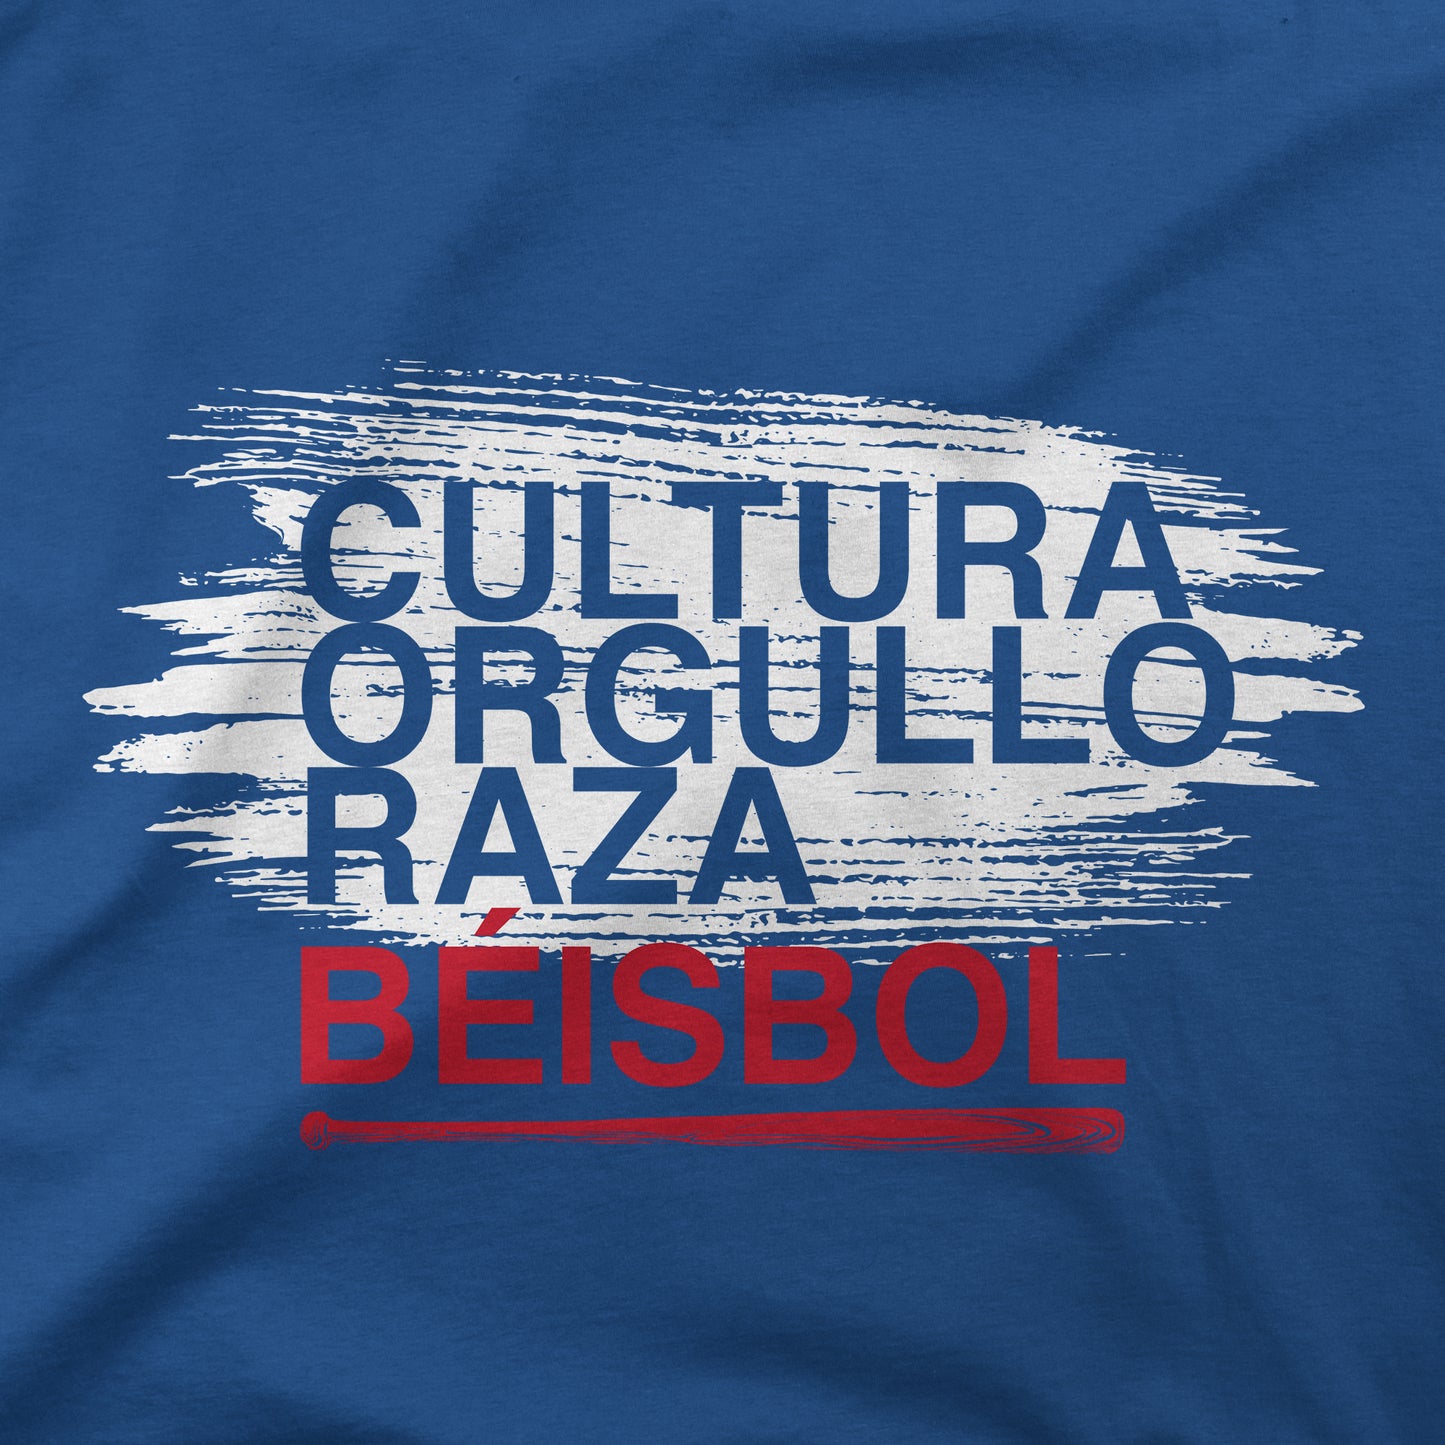 Cultura Orgullo Raza | Cuba | T-Shirt